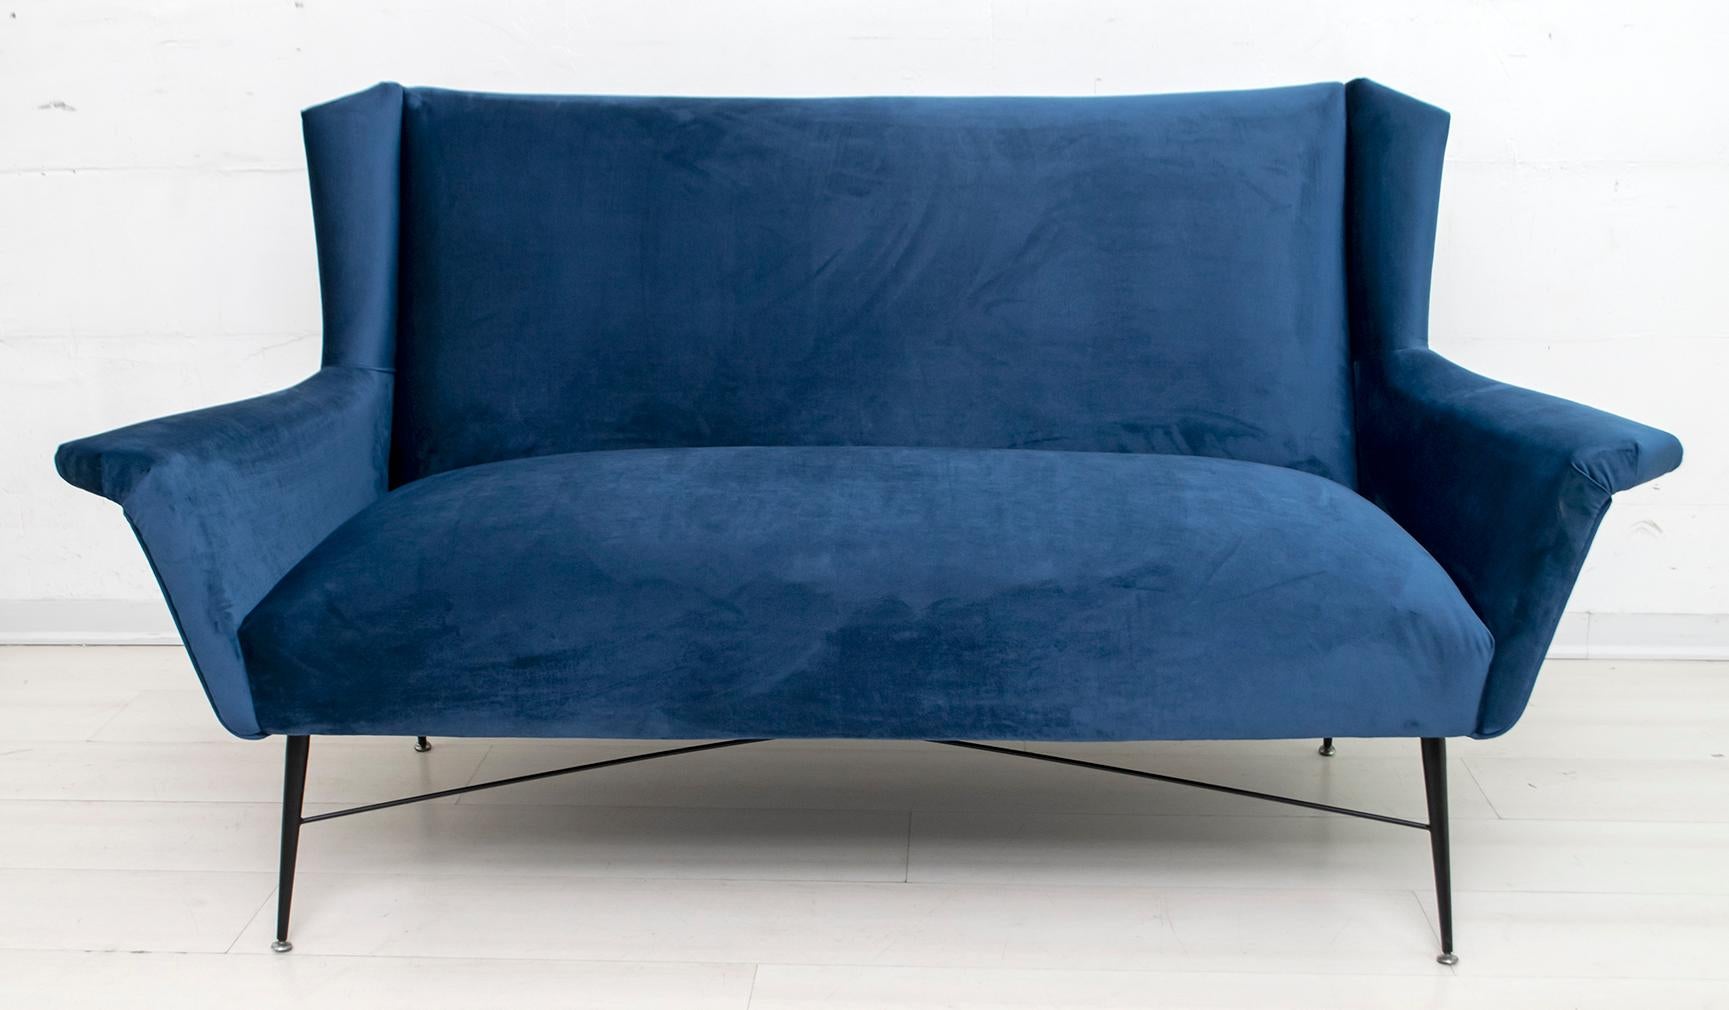 Canapé conçu par Gigi Radice pour Minotti. Réalisé avec une structure en bois massif, un revêtement en velours bleu et des pieds en métal laqué noir. La sellerie a été refaite.